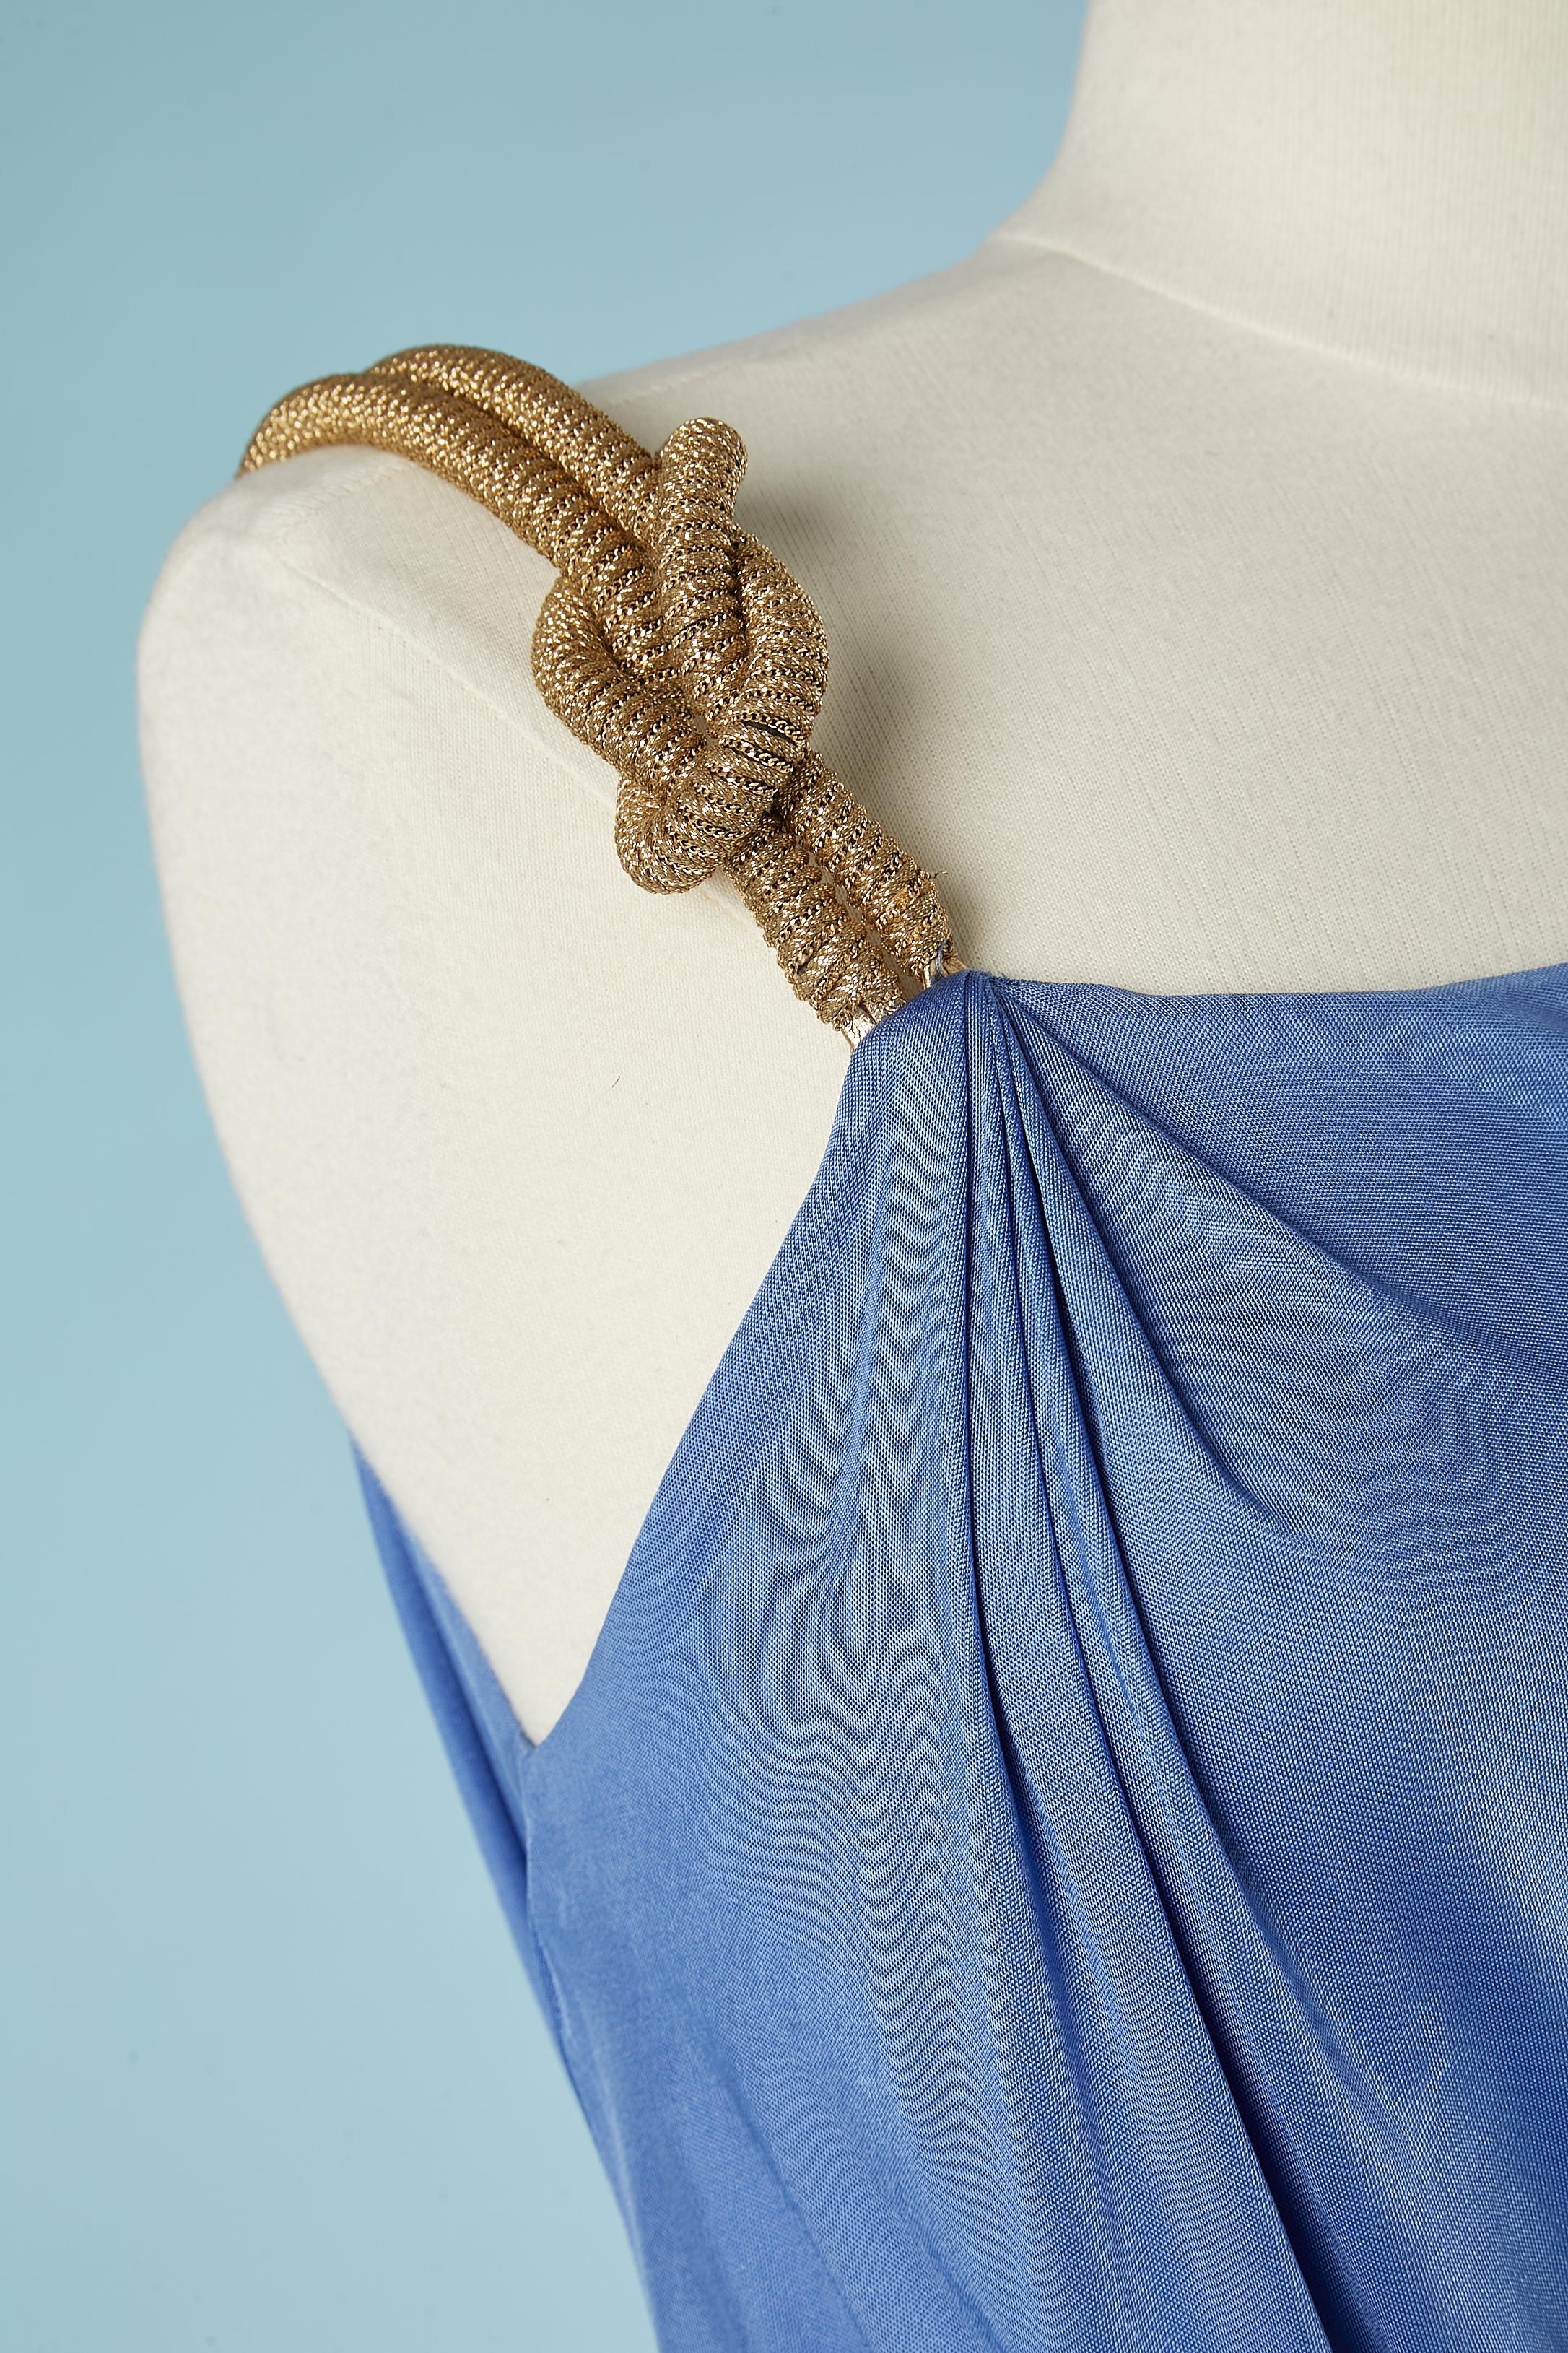 Asymmetrisches blaues Kleid aus Viskose mit goldenen Schulterriemen und Passepartout.
Teilung auf der rechten Seite = 60 cm 
Stoff: 100% Viskose.
SIZE :42 (It) 38 (Fr) M